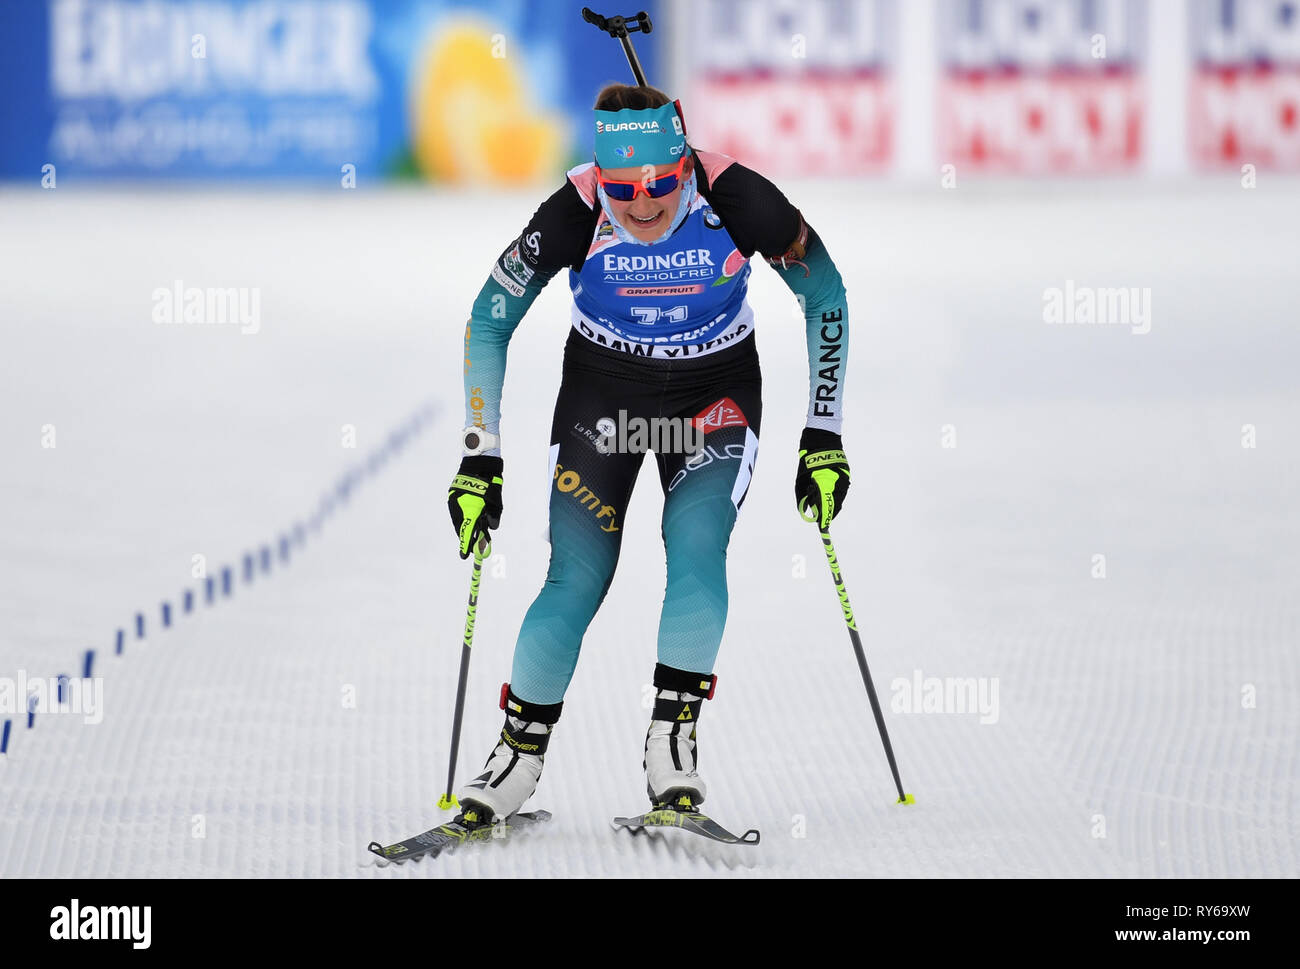 12 marzo 2019, Svezia, Östersund: Biathlon: World Championship, singolo 15 km, le donne. Justine Braisaz dalla Francia attraversa la linea del traguardo. Foto: Sven Hoppe/dpa Foto Stock